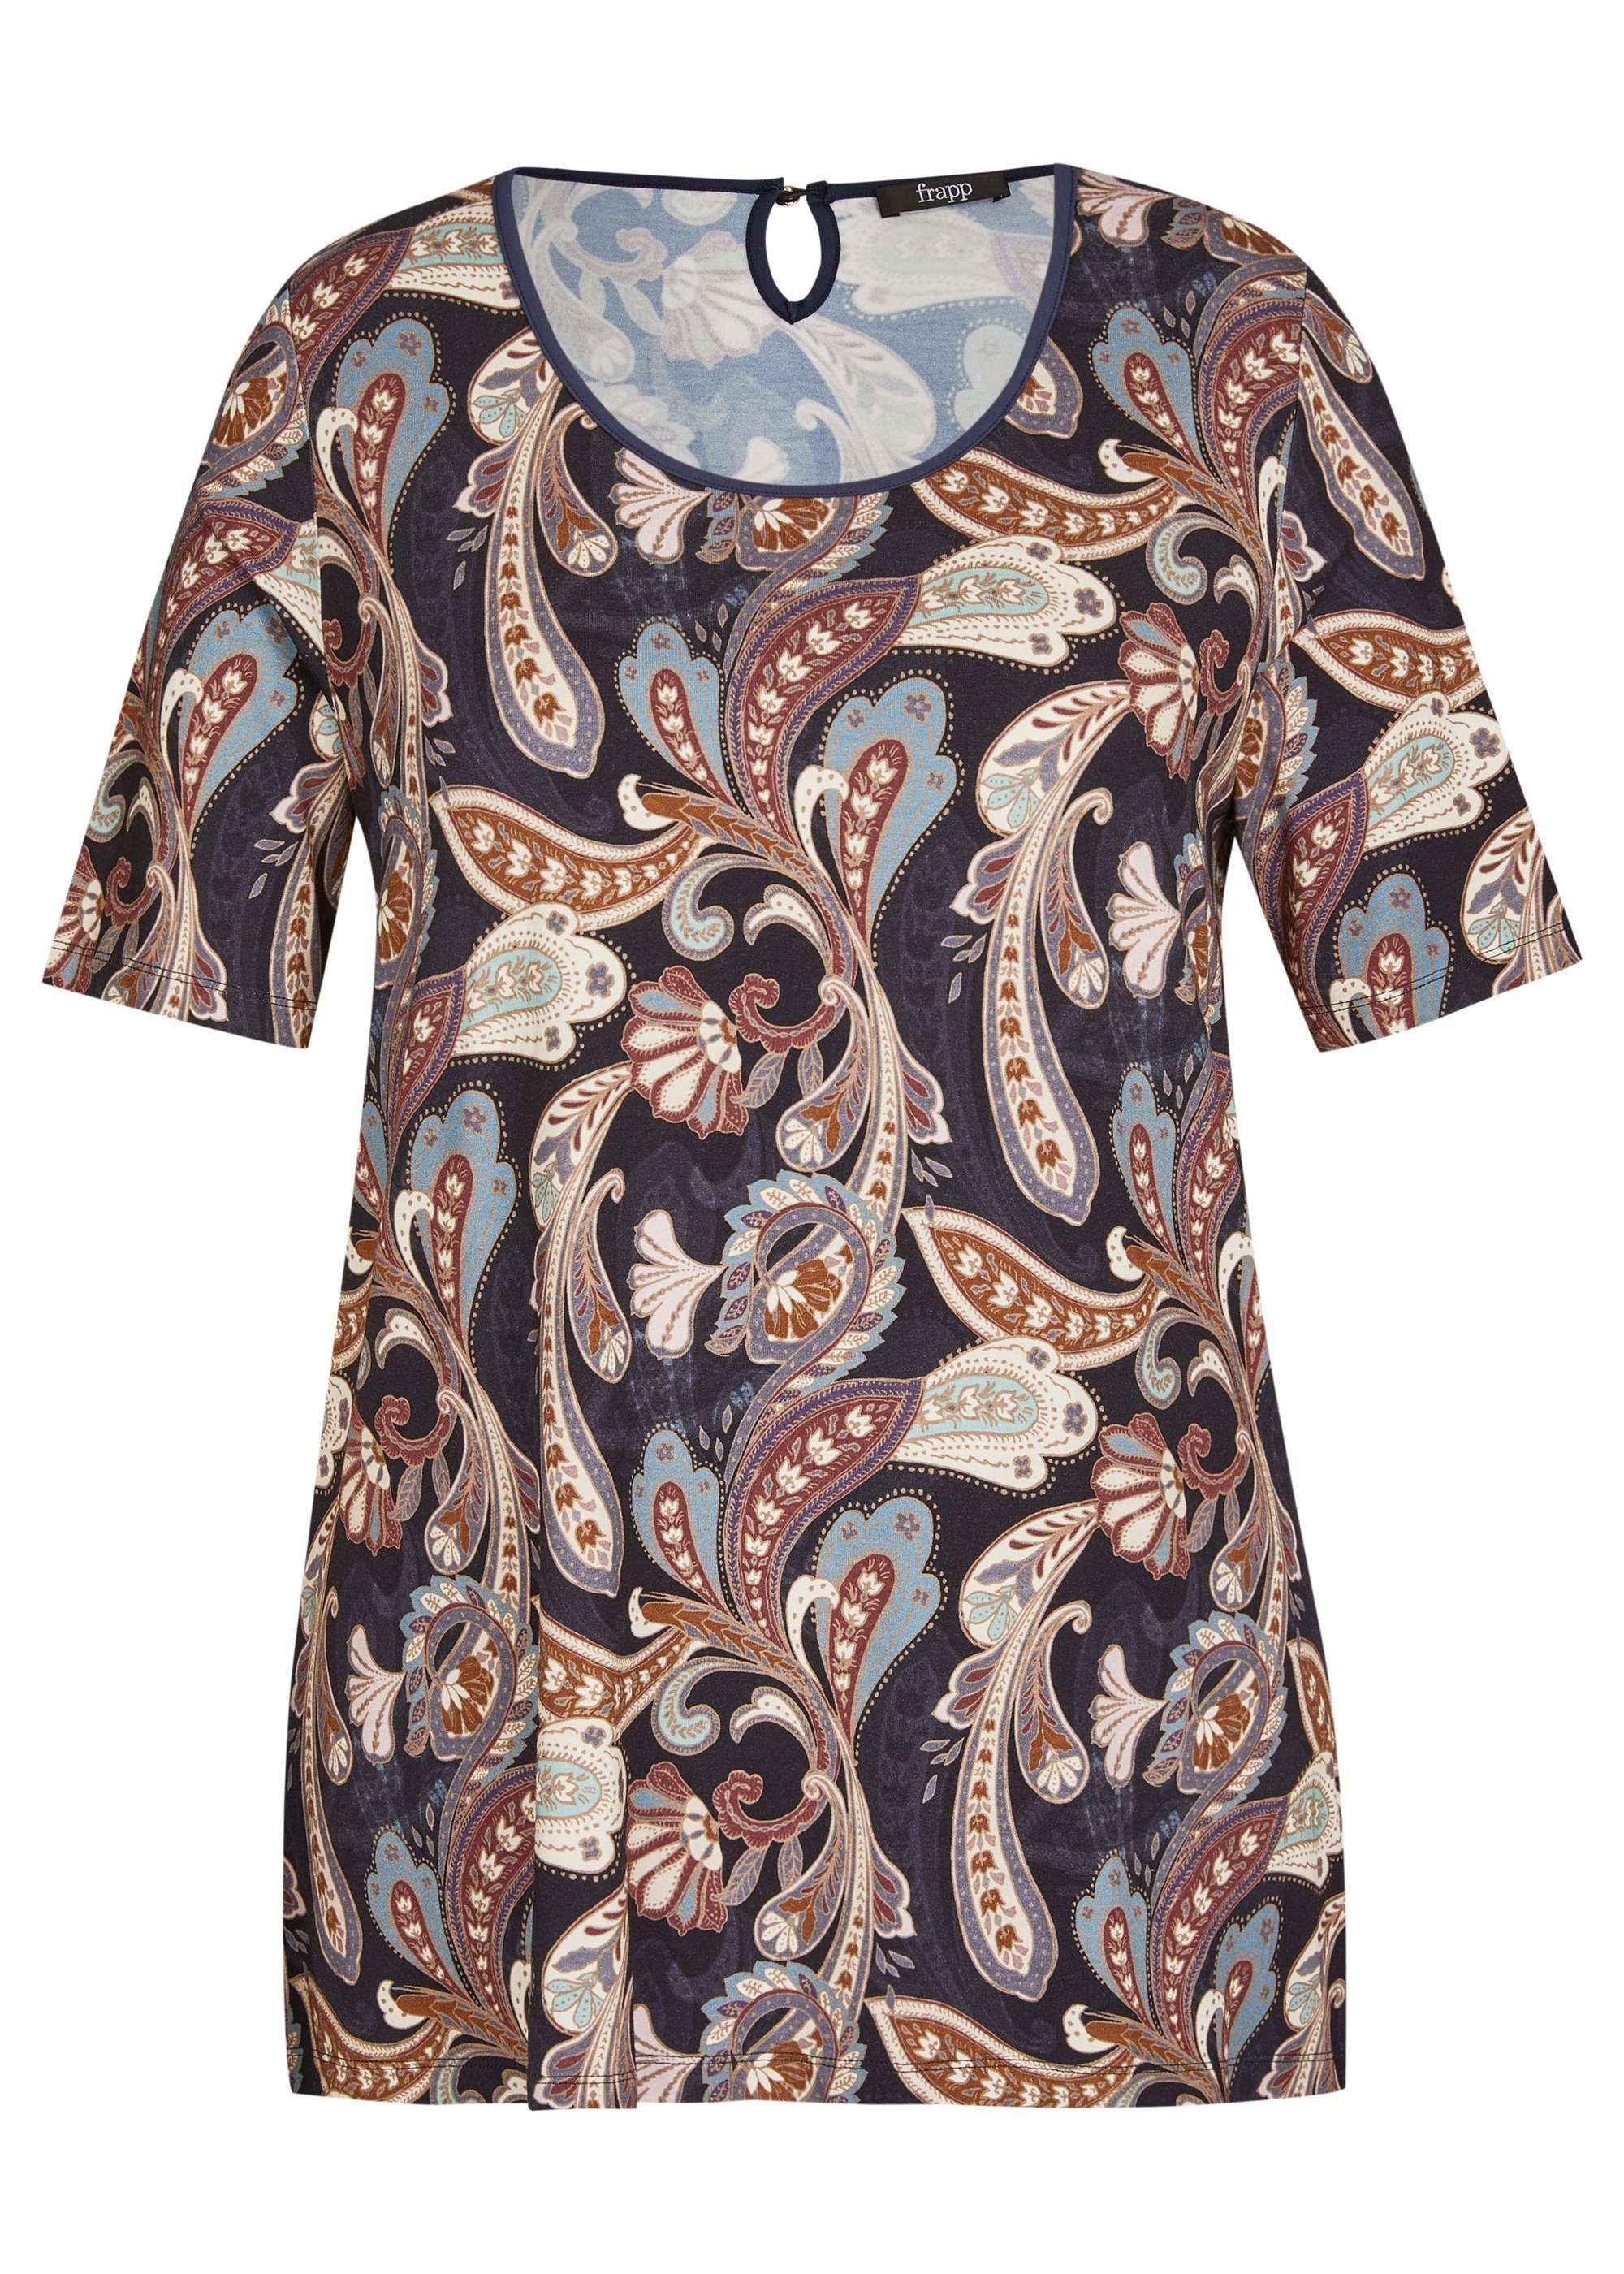 FRAPP Print-Shirt Romantisches T-Shirt mit orientalischem Muster